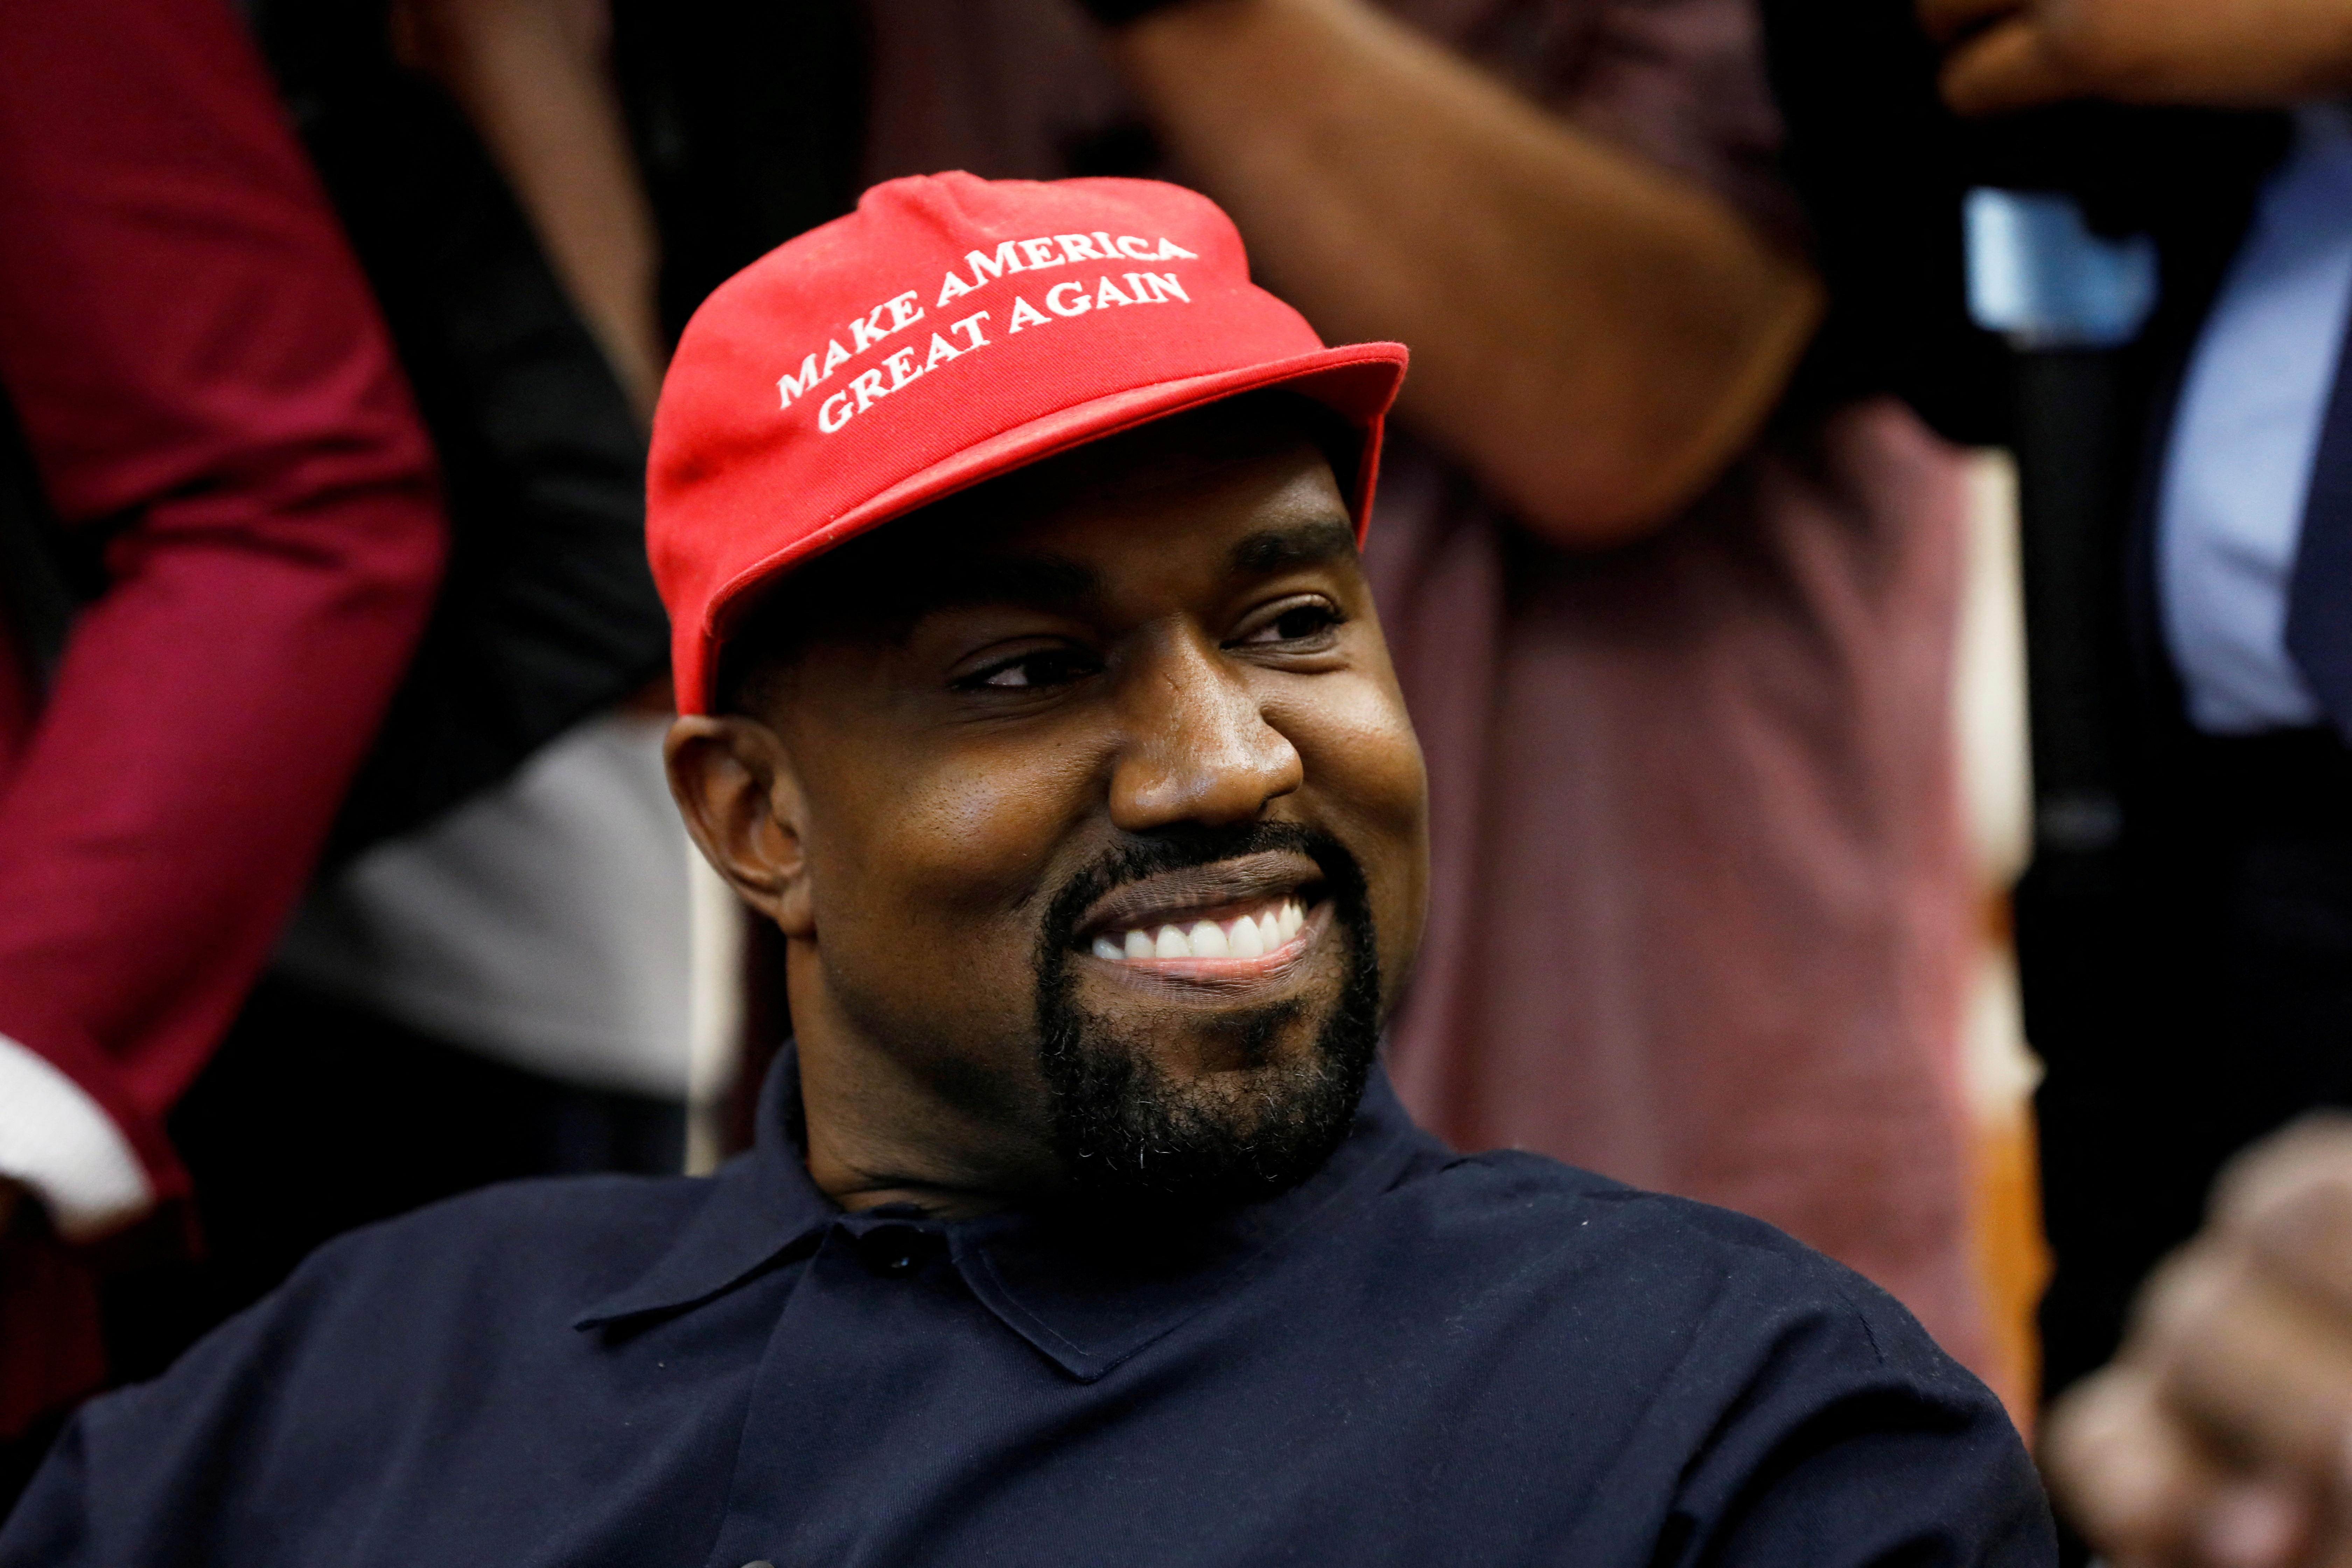 El rapero Kanye West fue expulsado de una reconocida tienda de zapatos en Los Ángeles por sus comentarios antisemitas